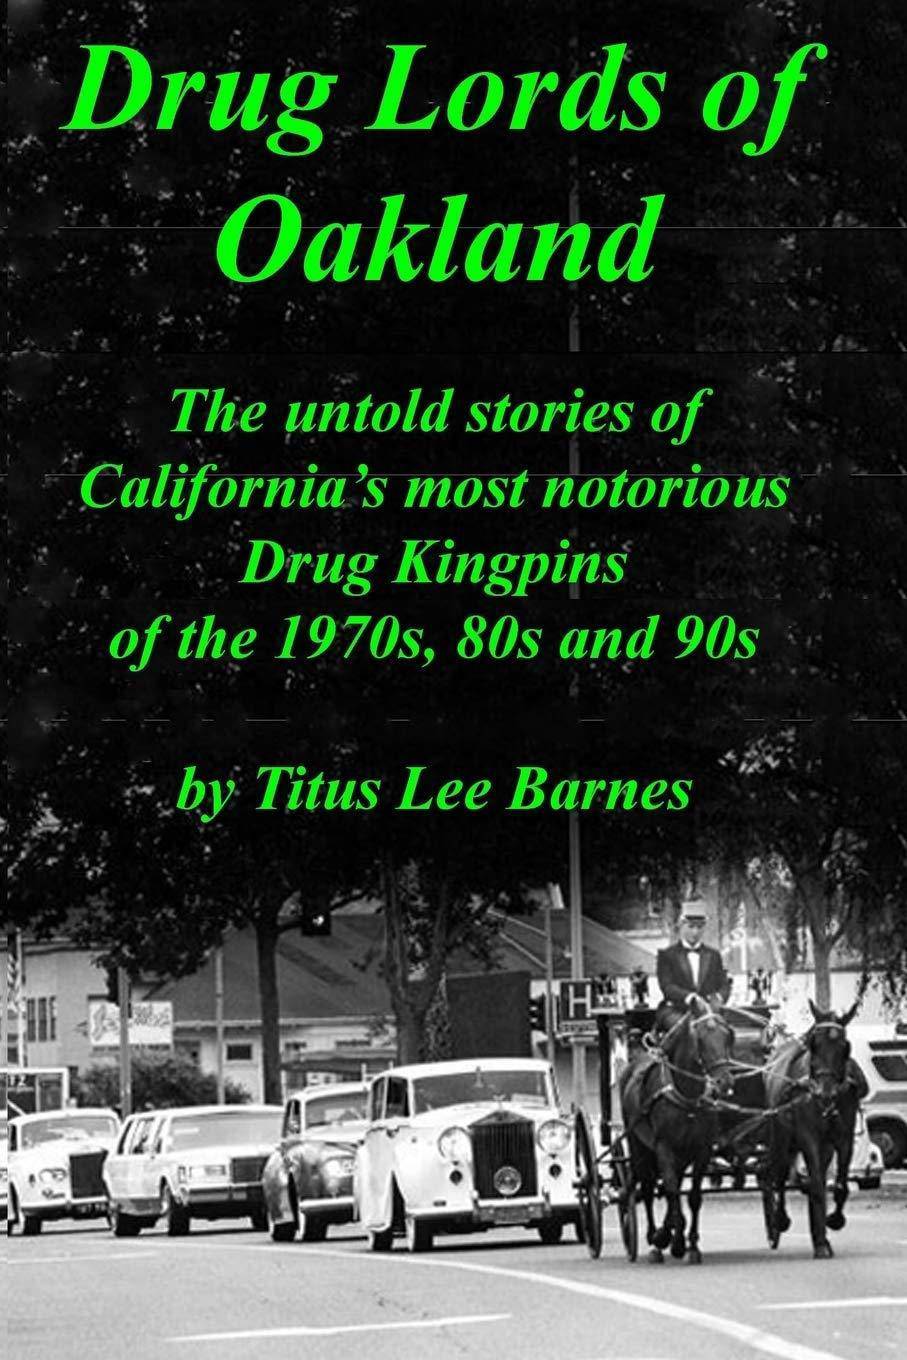 Drug Lords of Oakland - SureShot Books Publishing LLC